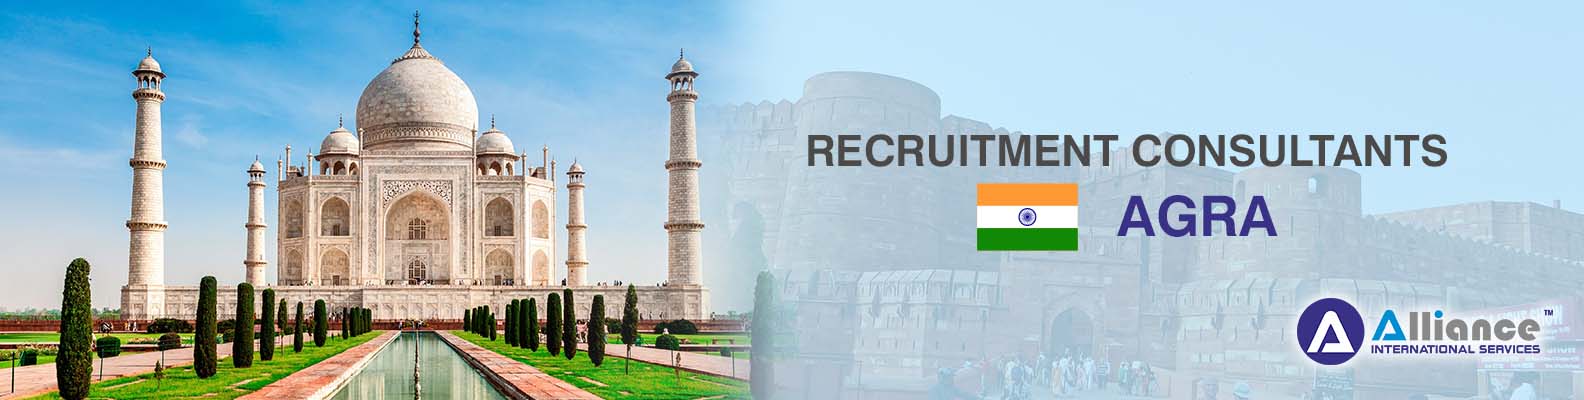 Recruitment Consultants Agra